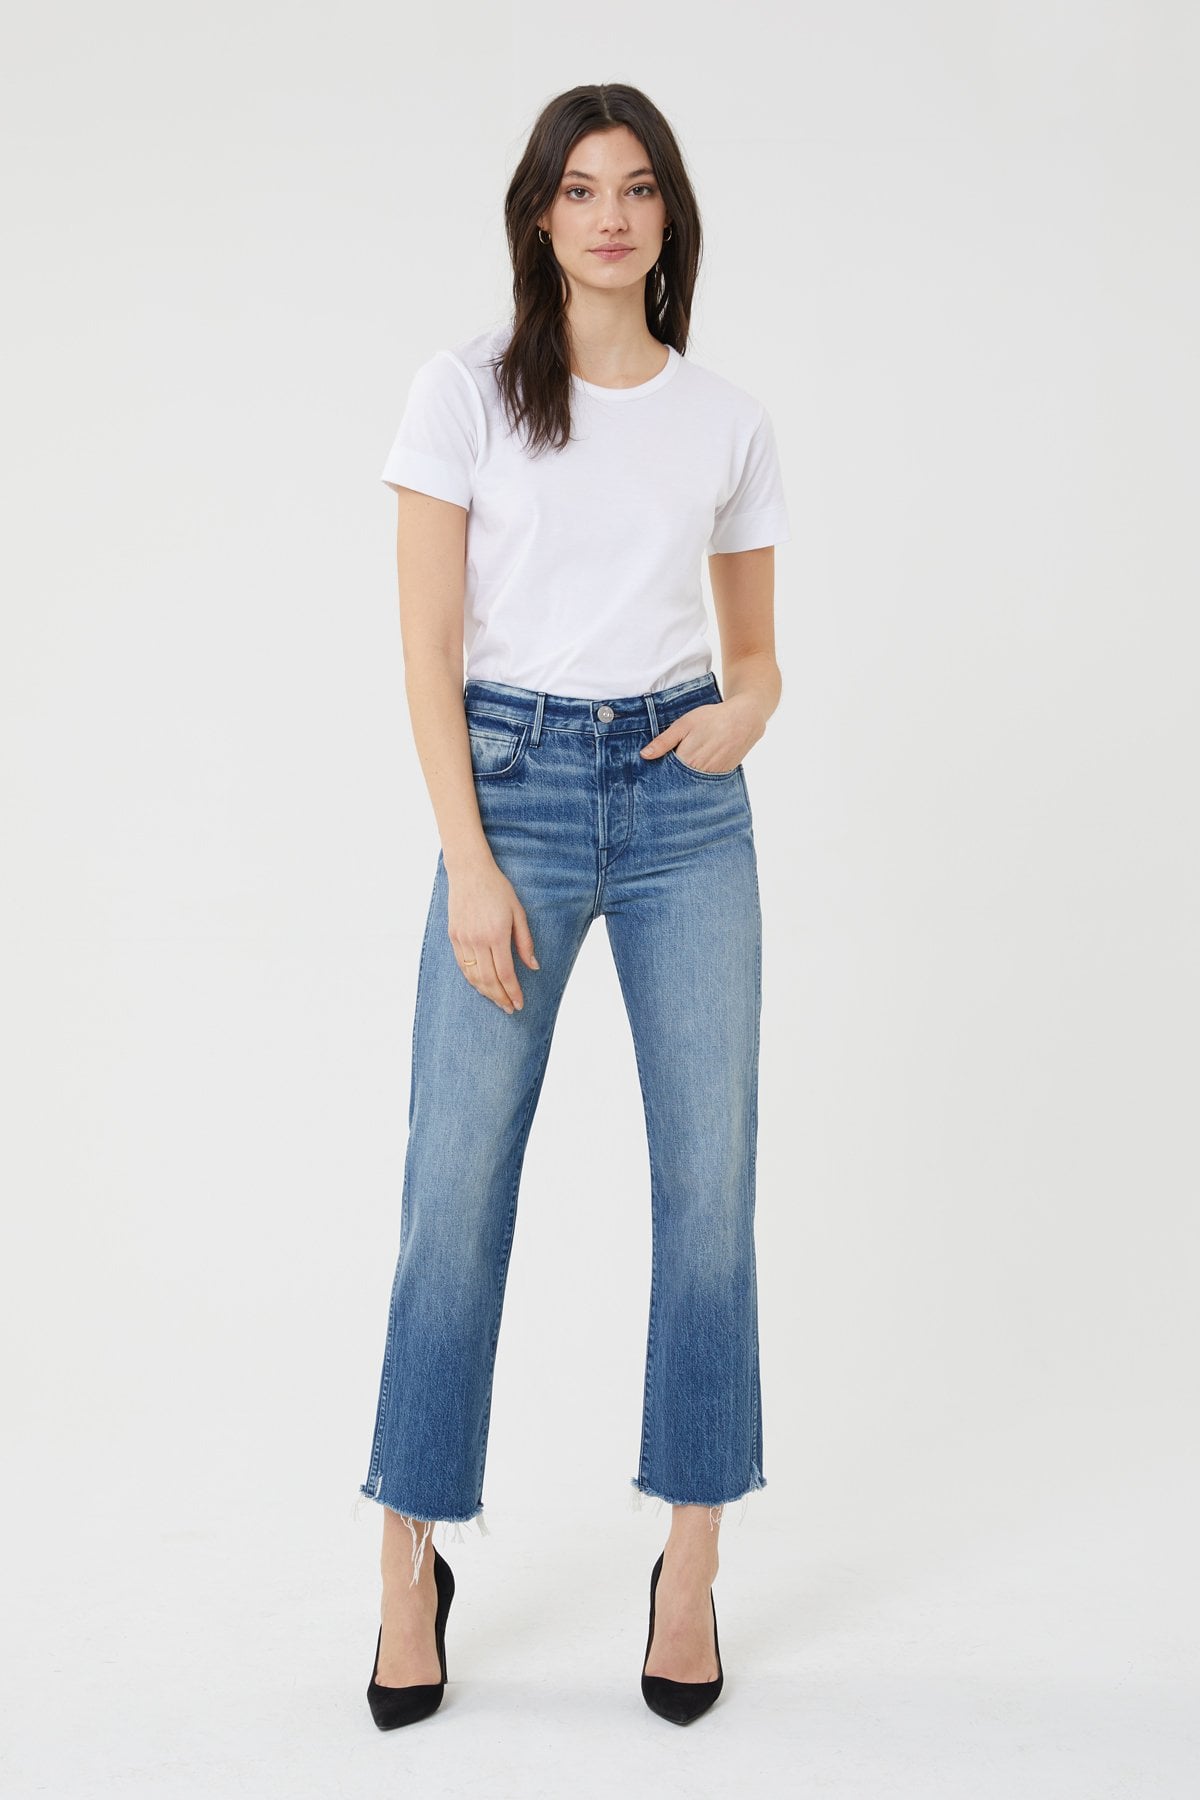 trendy jeans 2019